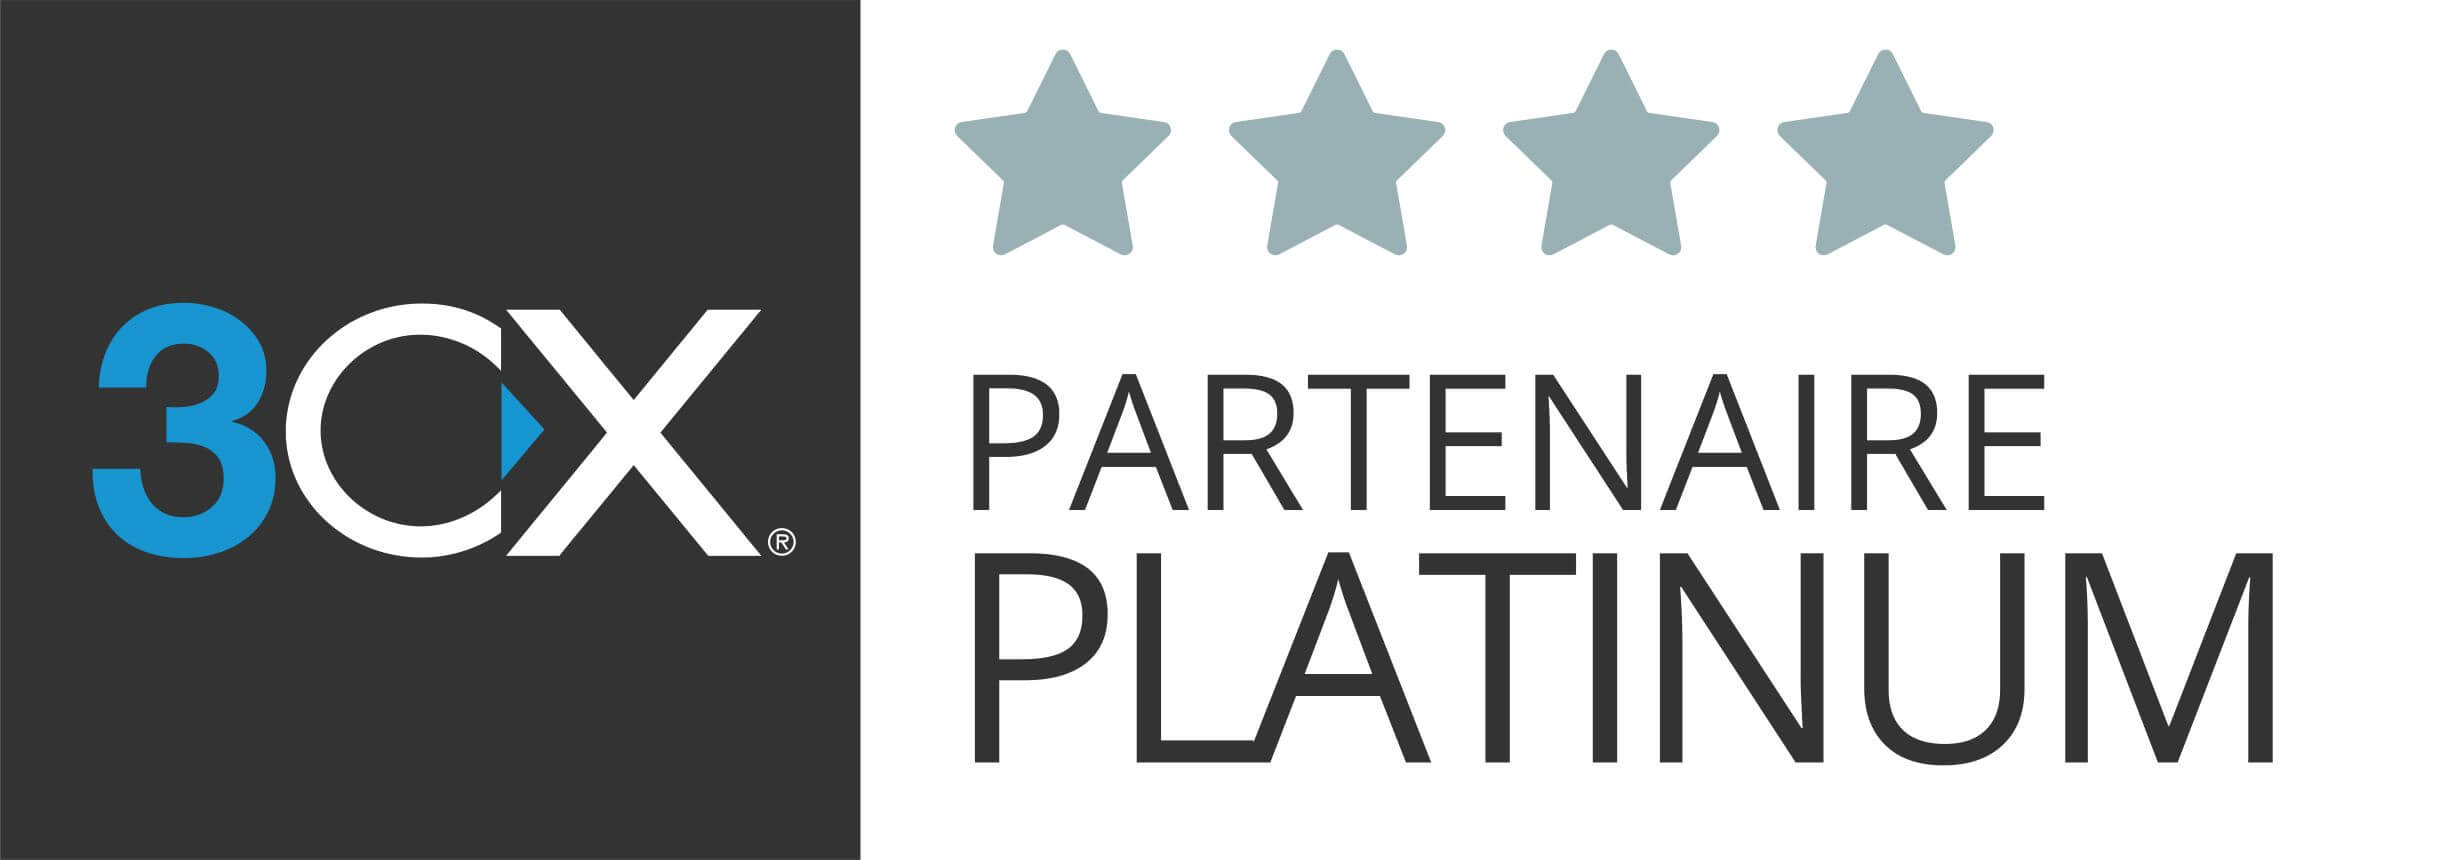 3CX Platinum Partner